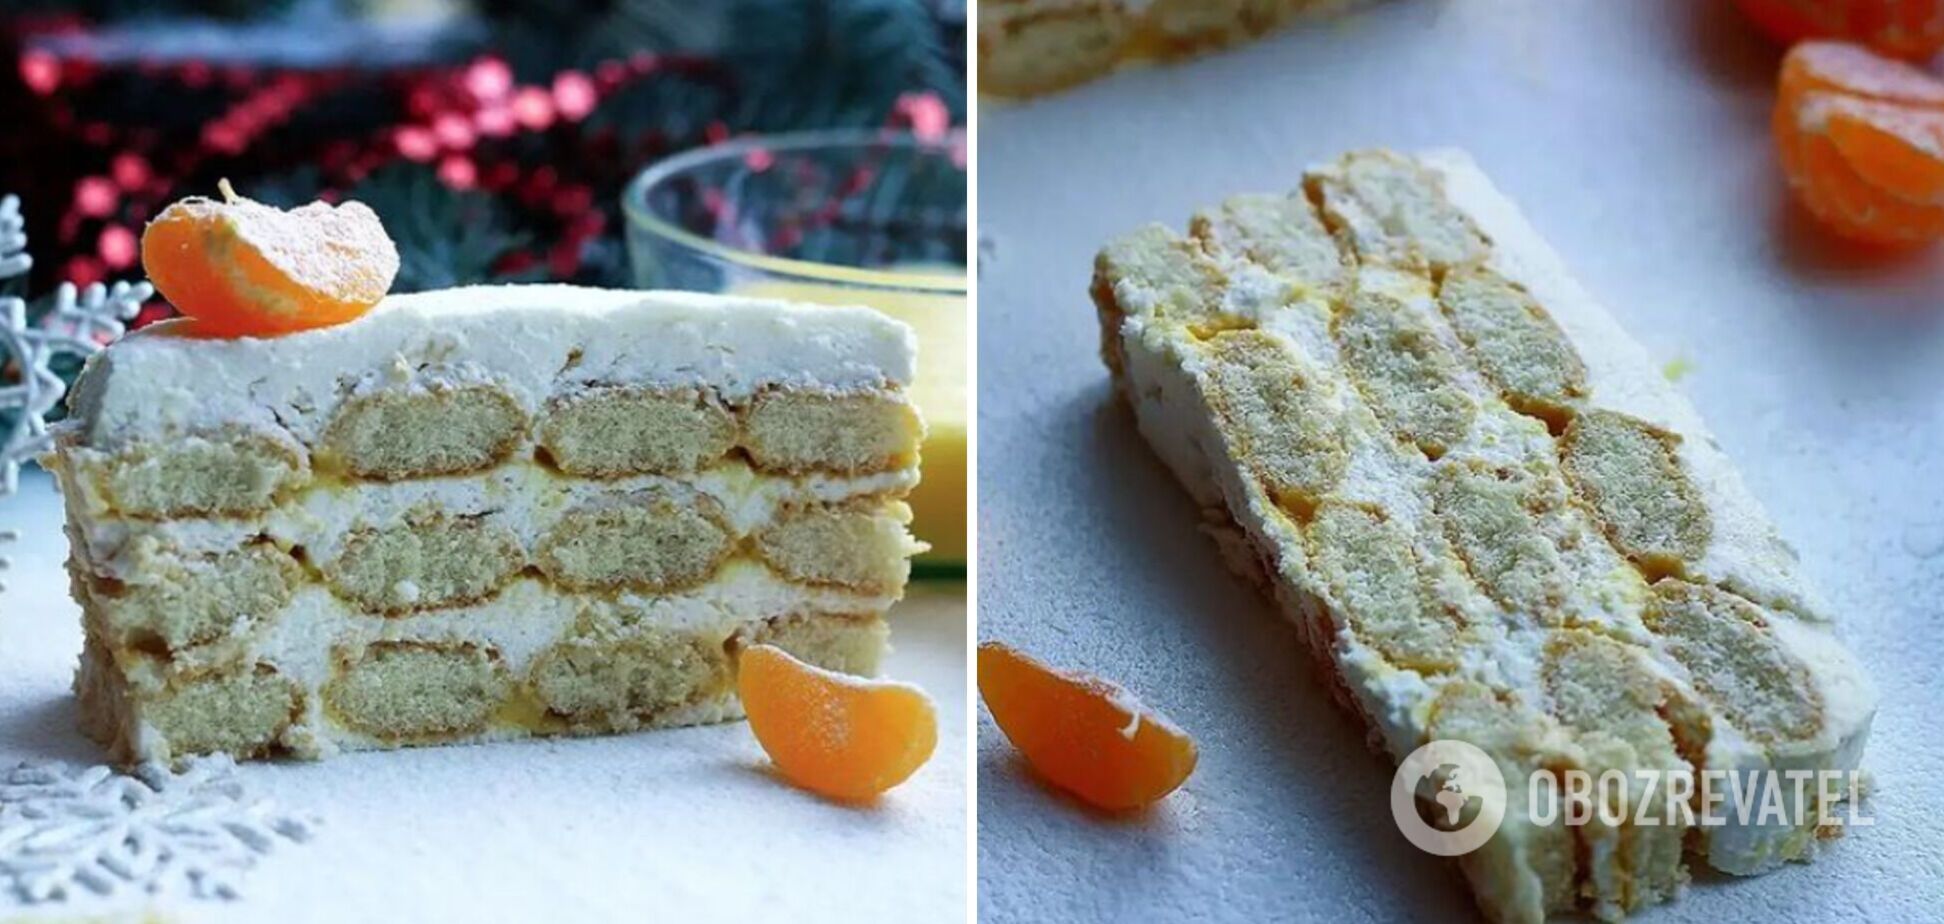 Новорічний десерт у стилі тірамісу без випічки: з мандариновим кремом